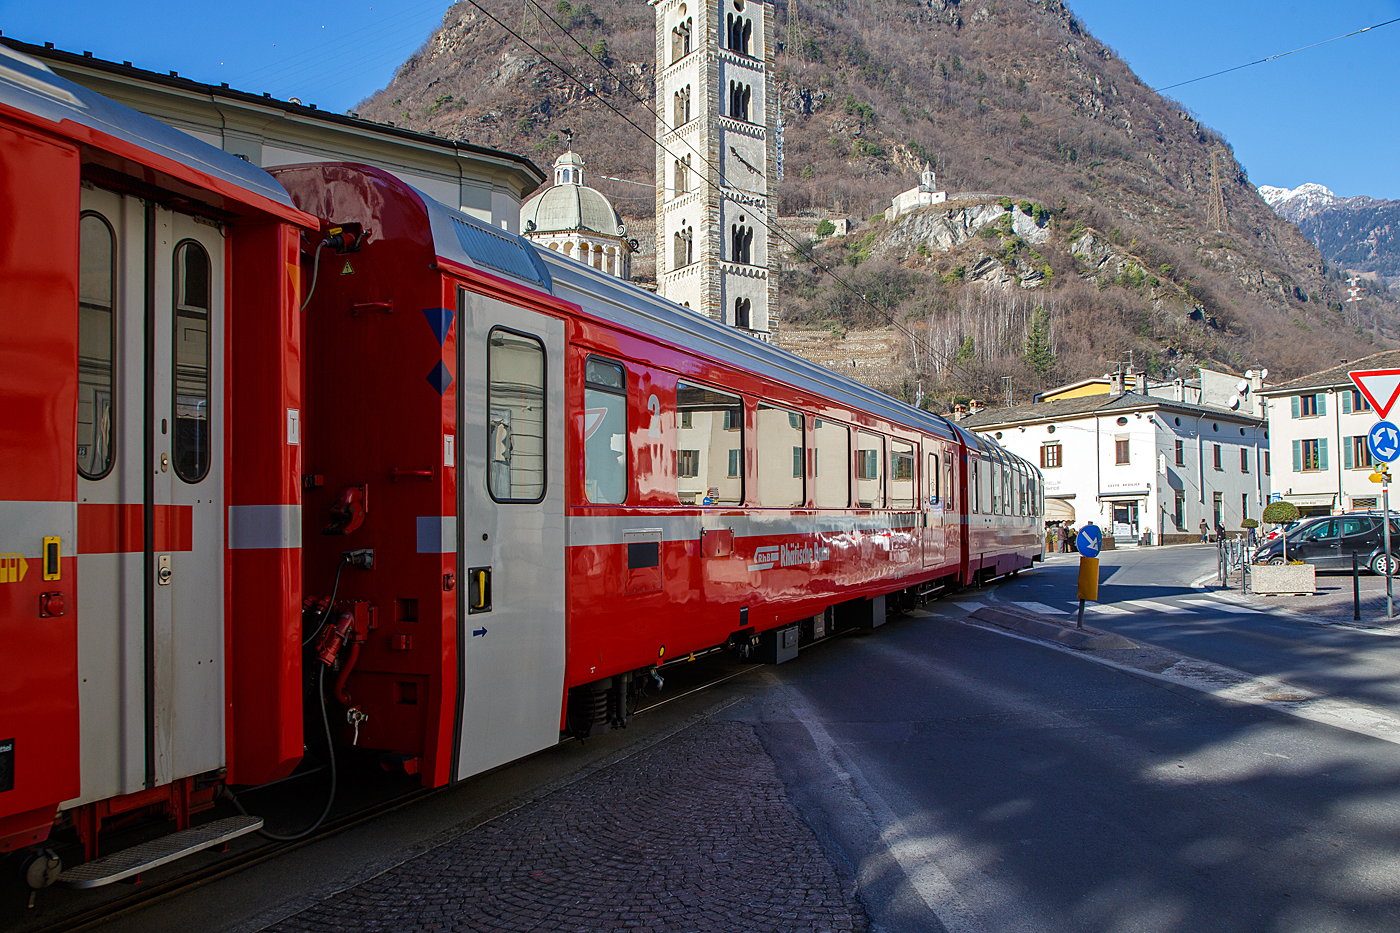 RhB BD 2475 ein vierachsiger verkürzter (Berninabahn) EW IV (PA90) zweite Klasse Personenwagen mit Gepäckabteil, eingereiht in einen RhB Regio von St. Moritz nach Tirano, am 19 Februar 2017 auf der Via Elvezia in Tirano.

Um den schweizerischen Meterspurbahnen die (noch) nicht zu reinen Triebzugeinheiten übergingen kostengünstige Reisezugwagen anbieten zu können, entwickelte SWA - Schindler Waggon Altenrhein (heute Stadler) das  PA90  genannte Baukastensystem, das bei verschiedenen Fahrzeuglängen die Ausführung mit Festfenstern, Senkfenstern oder als Panoramawagen ermöglichen sollte. Dieses Konzept erlaubt eine wirtschaftliche Fertigung von kundenspezifischen Wagenkastenvarianten, wobei auf einheitliche Module zurückgegriffen werden konnte. Während für die 1. Klasse ein einheitlicher Sitzteiler vorgesehen wurde, konnte in der 2. Klasse zwischen den Varianten Regional- und Fernverkehr gewählt werden. Dank besonders großer Sitzteiler und Fensterflächen, sowie den von SIG gebauten, sehr laufruhigen Drehgestellen Typ SIG 90 bieten diese Wagen einen bisher nicht gekannten Komfort.

Einheitliche Merkmale aller Wagen sind:
• Aufbau aus Leichtmetall-Großstrangpressprofilen,
• elektrisch angetriebene außen bündige Schwenkschiebetüren,
• verbesserte Isolation,
• breitere Fenster (1.450 bzw. 1.722 mm),
• geschlossenes WC-System (sofern WC vorhanden).

Die RhB bestellte gemeinsam mit den Appenzeller Bahnen (AB) und der SBB Brünig Bahn insgesamt 31 Wagen in elf verschiedenen Ausführungen, darunter verschiedene Steuerwagen (AB) und sogar Panoramawagen (SBB). Die von der RhB beschafften Fahrzeuge aus diesem Baukastensystem werden als Einheitswagen IV bezeichnet stellen eine konsequente Weiterentwicklung der Einheitswagen II und III dar. Die RhB erhielt ab 1992 siebzehn Personenwagen, davon elf in verkürzter Bauart für den Einsatz auf der Berninabahn. Eins dieser Fahrzeuge wurde als BD mit einem Gepäckabteil ausgestattet, das ist dieser. Die sechs längeren Wagen waren hauptsächlich für den Einsatz auf der Albulabahn.

Die RhB SWA PA90 kurzen Bernina-Wagen sind A 1273  bis 75, B 2491 bis 97 und der BD 2475. Die SWA PA90 langen Albula-Wagen sind A 1281 bis 93 und B 2391 bis 93. Bei den A-Wagen ist die Sitzteilung 2.054 mm und bei den B Wagen 1.782 mm.

Die etwas festere Aluminiumlegierung, die Großprofilbauweise, die vergrößerte Fensterfläche und die verbesserte Isolation zeigten sich aber auch in einem höheren Gewicht. Die Flexibilität des Baukastensystems zeigte sich darin, dass sich die 31 gebauten Wagen auf 11 verschiedene Typen verteilten. Nachbeschaffungen dieses gelungenen Wagentyps gab es jedoch nicht, aber indessen sind viele Elemente in die Konstruktion der Bernina-Express-Panoramawagen eingeflossen.

TECHNISCHE DATEN:
Hersteller: Schindler Waggon AG, Altenrhein
Baujahr: 1992
Spurweite: 1.000 mm
Anzahl der Achsen: 4 (2´2´)
Länge über Puffer: 16.465 mm
Drehgestellbauart: SIG 90
Sitzplätze: 31
Eigengewicht: 16,5 t
Ladegewicht: 2,0 t
zulässige Geschwindigkeit: 90 km/h
Lauffähig: StN (Stammnetz) / BB (Berniabahn) / MGB (Matterhorn Gotthard Bahn)